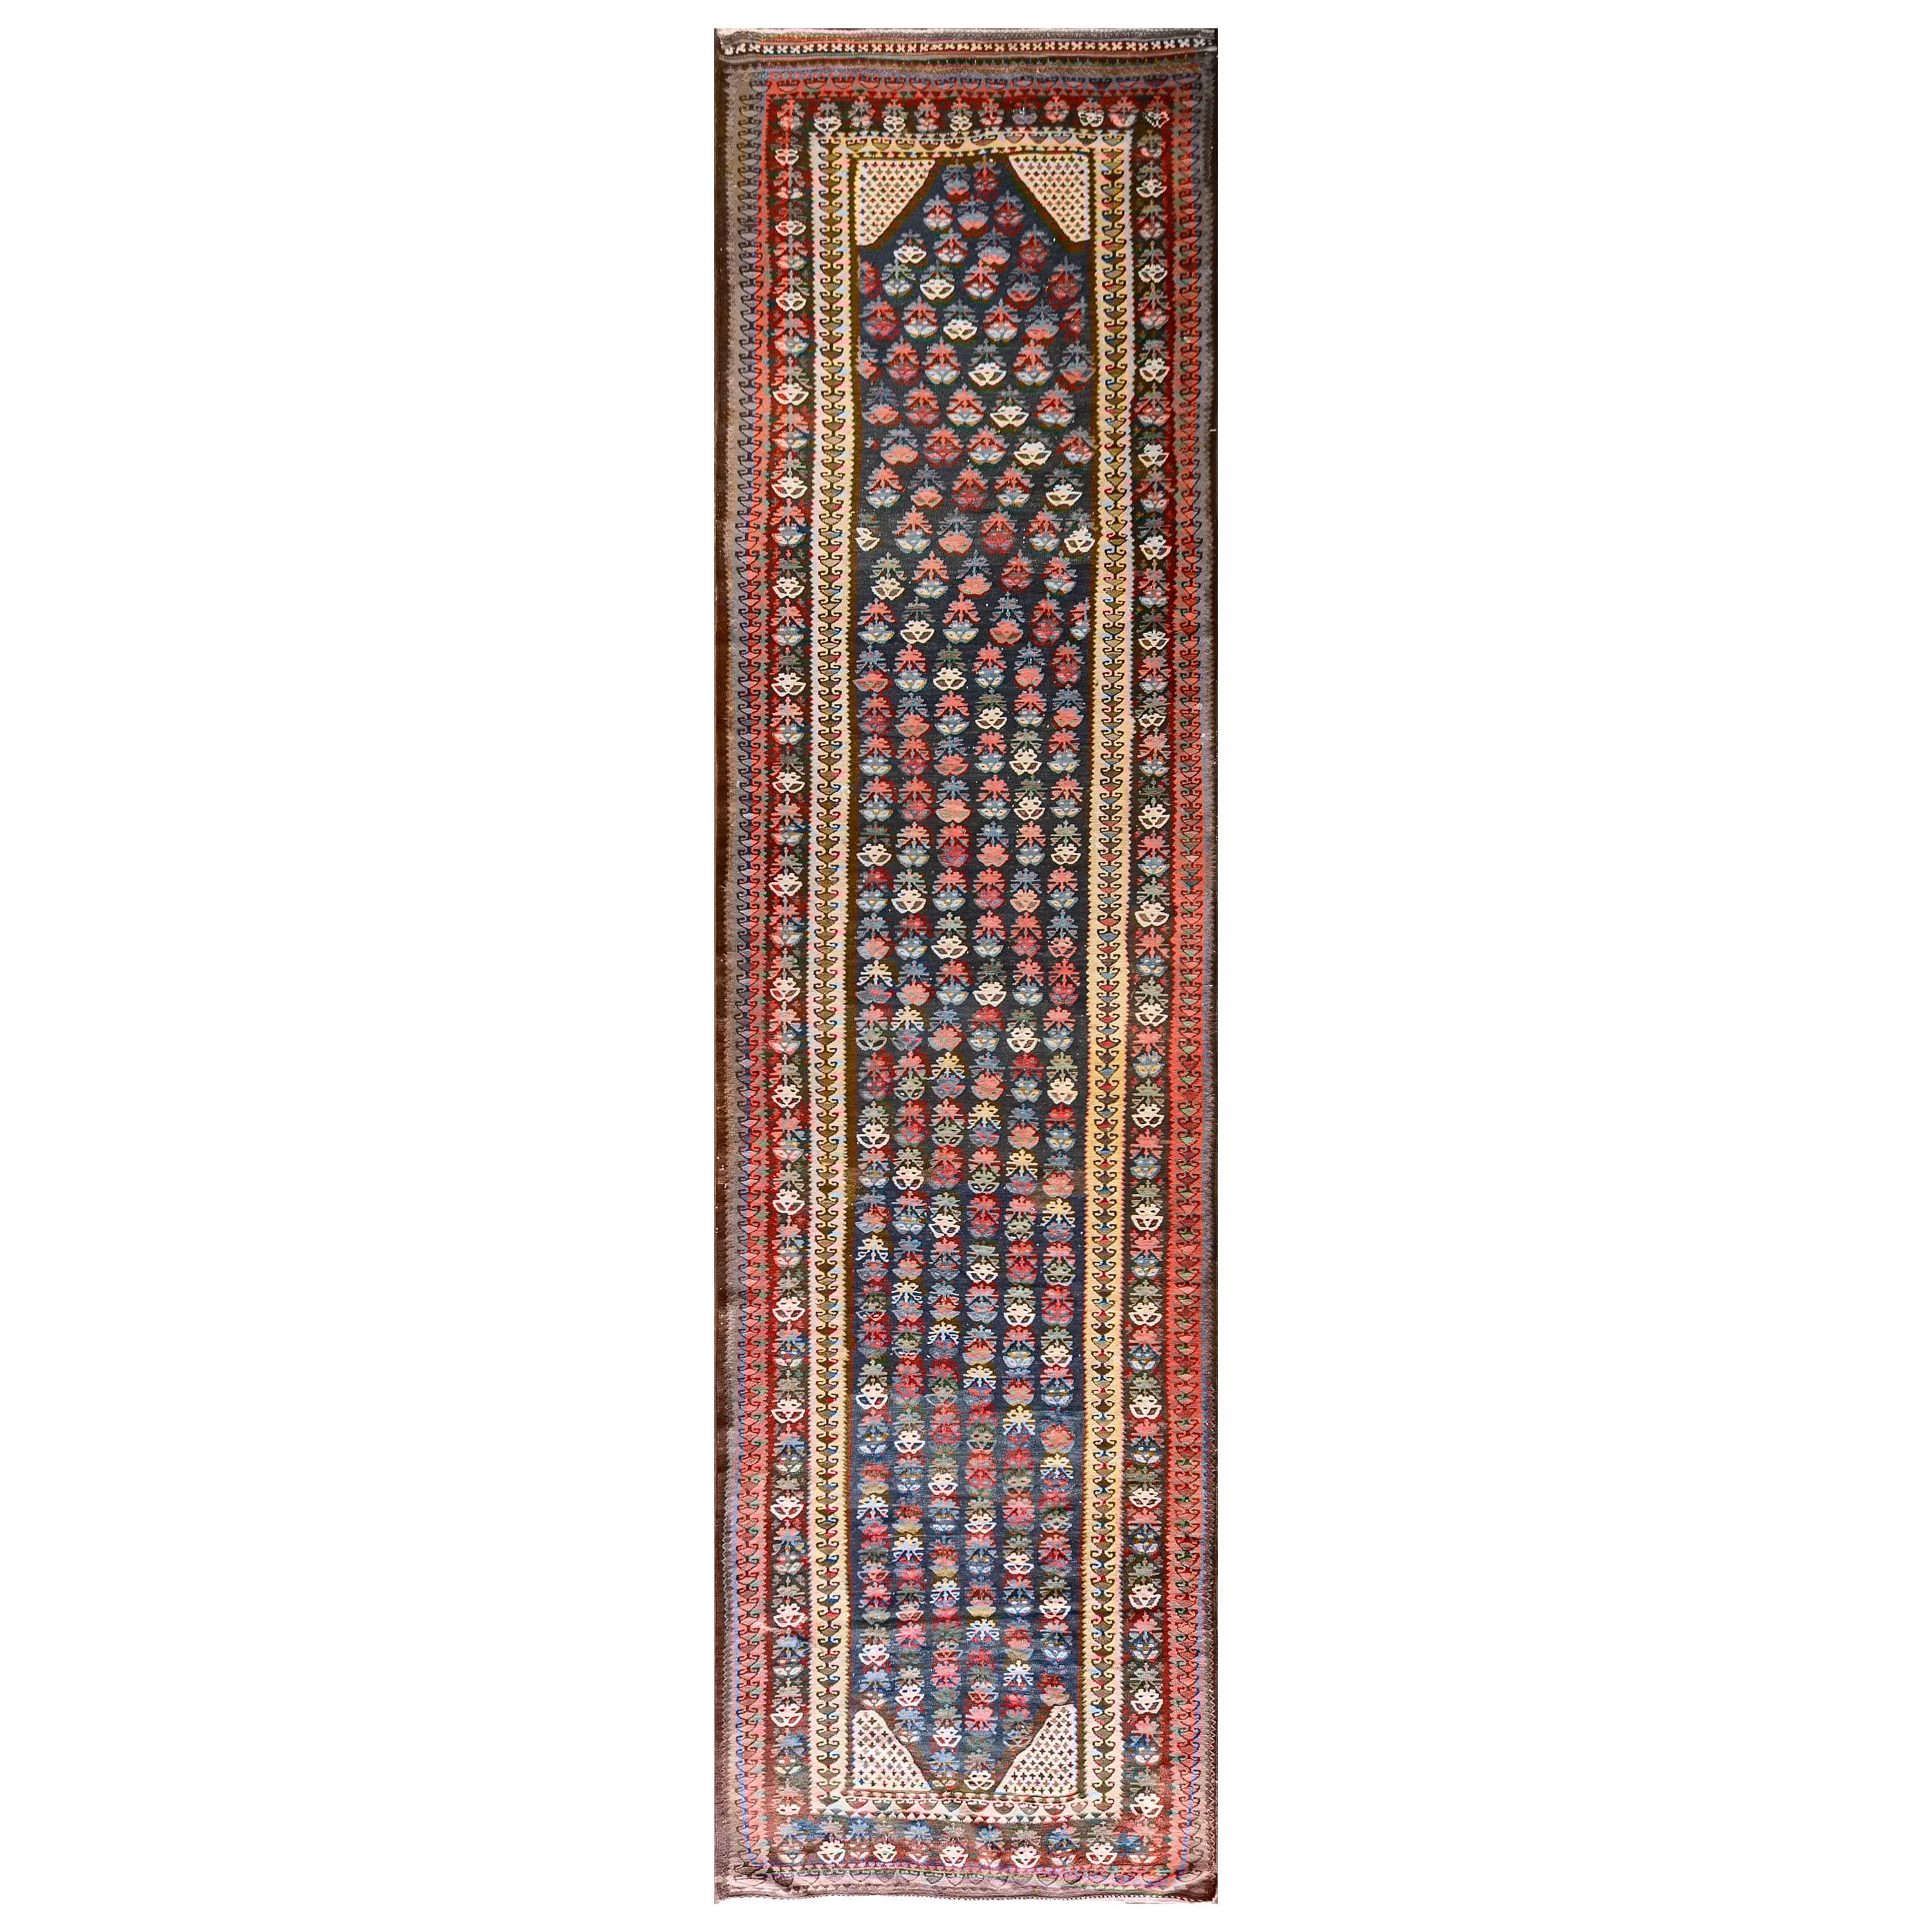 Antique Persian Soumak Kiim Runner, 4'2" x 15'7"